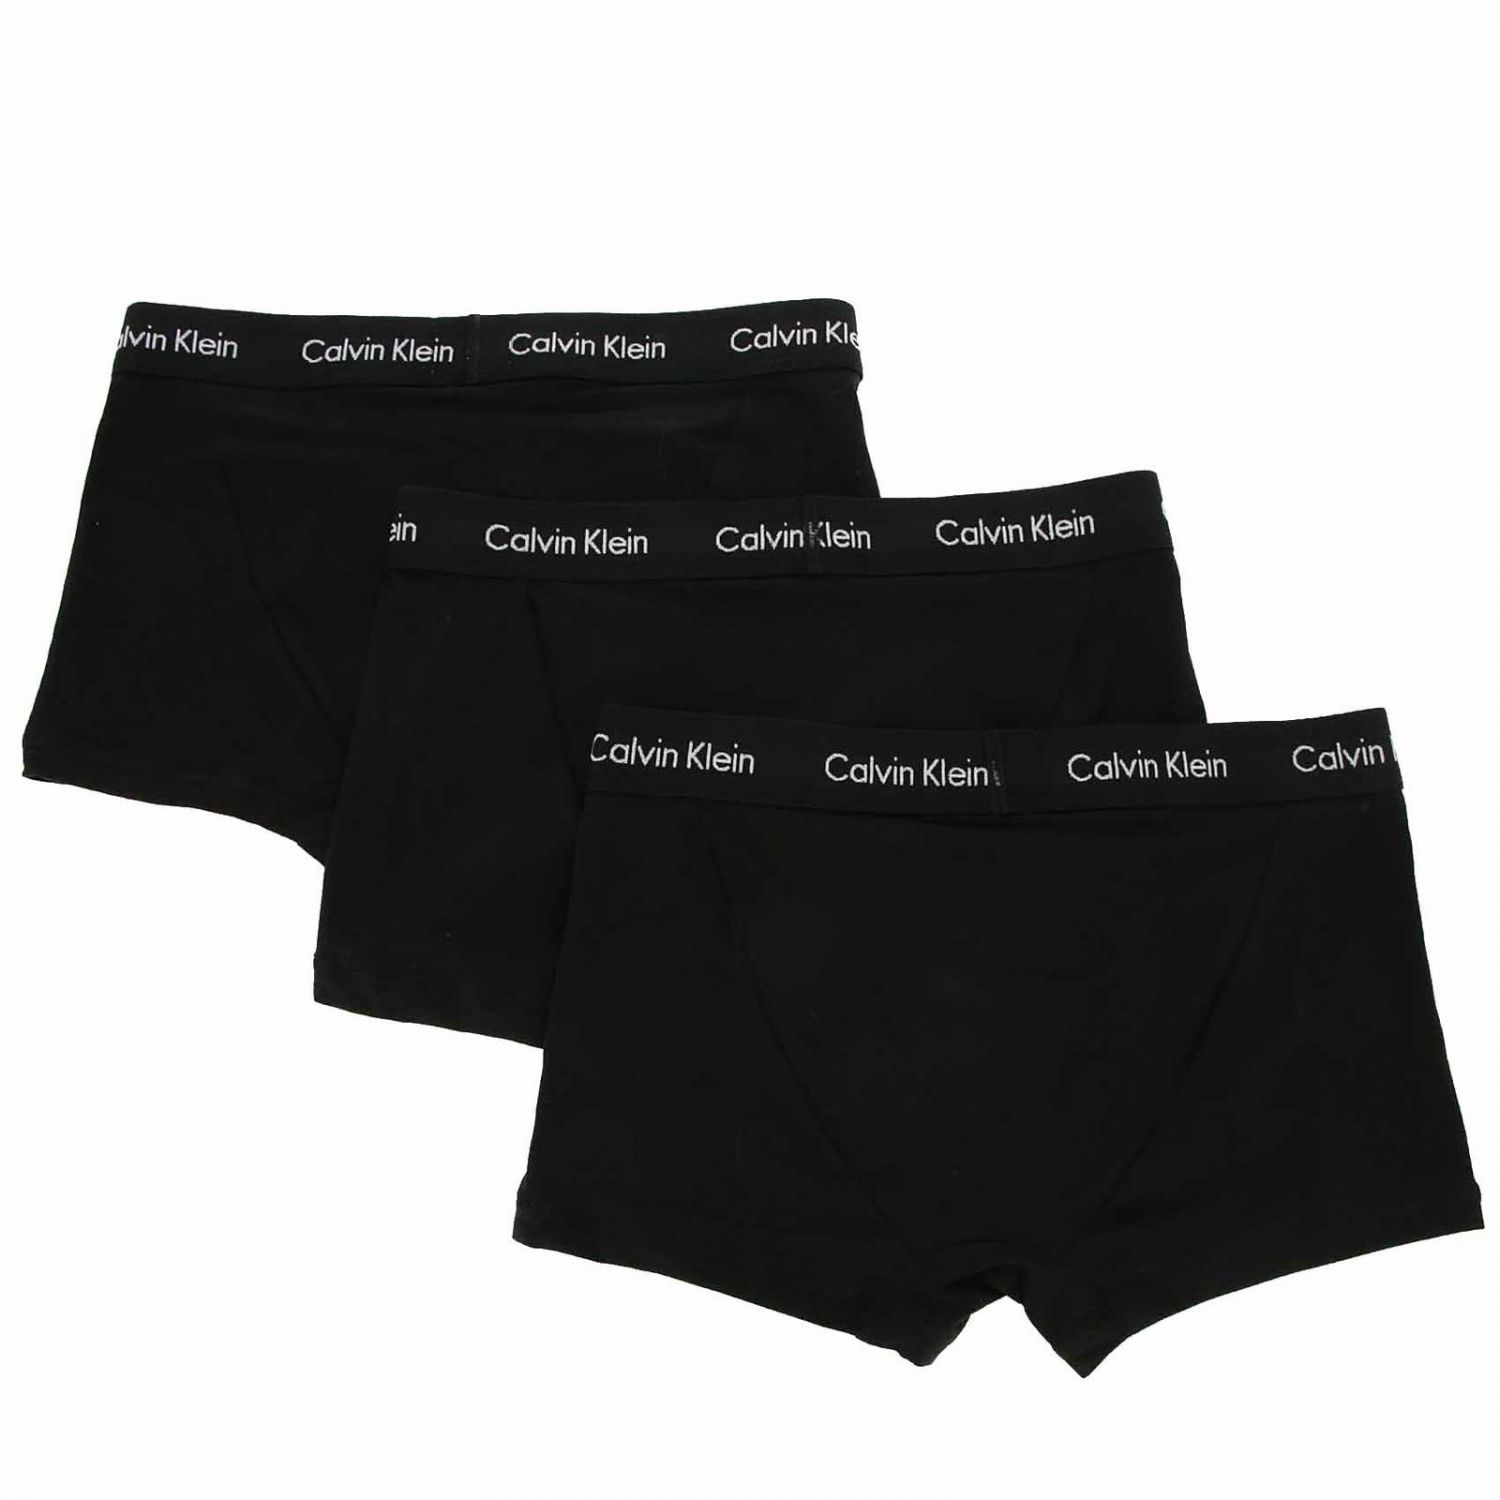 Calvin Klein Underwear Outlet: Underwear men | Underwear Calvin Klein ...